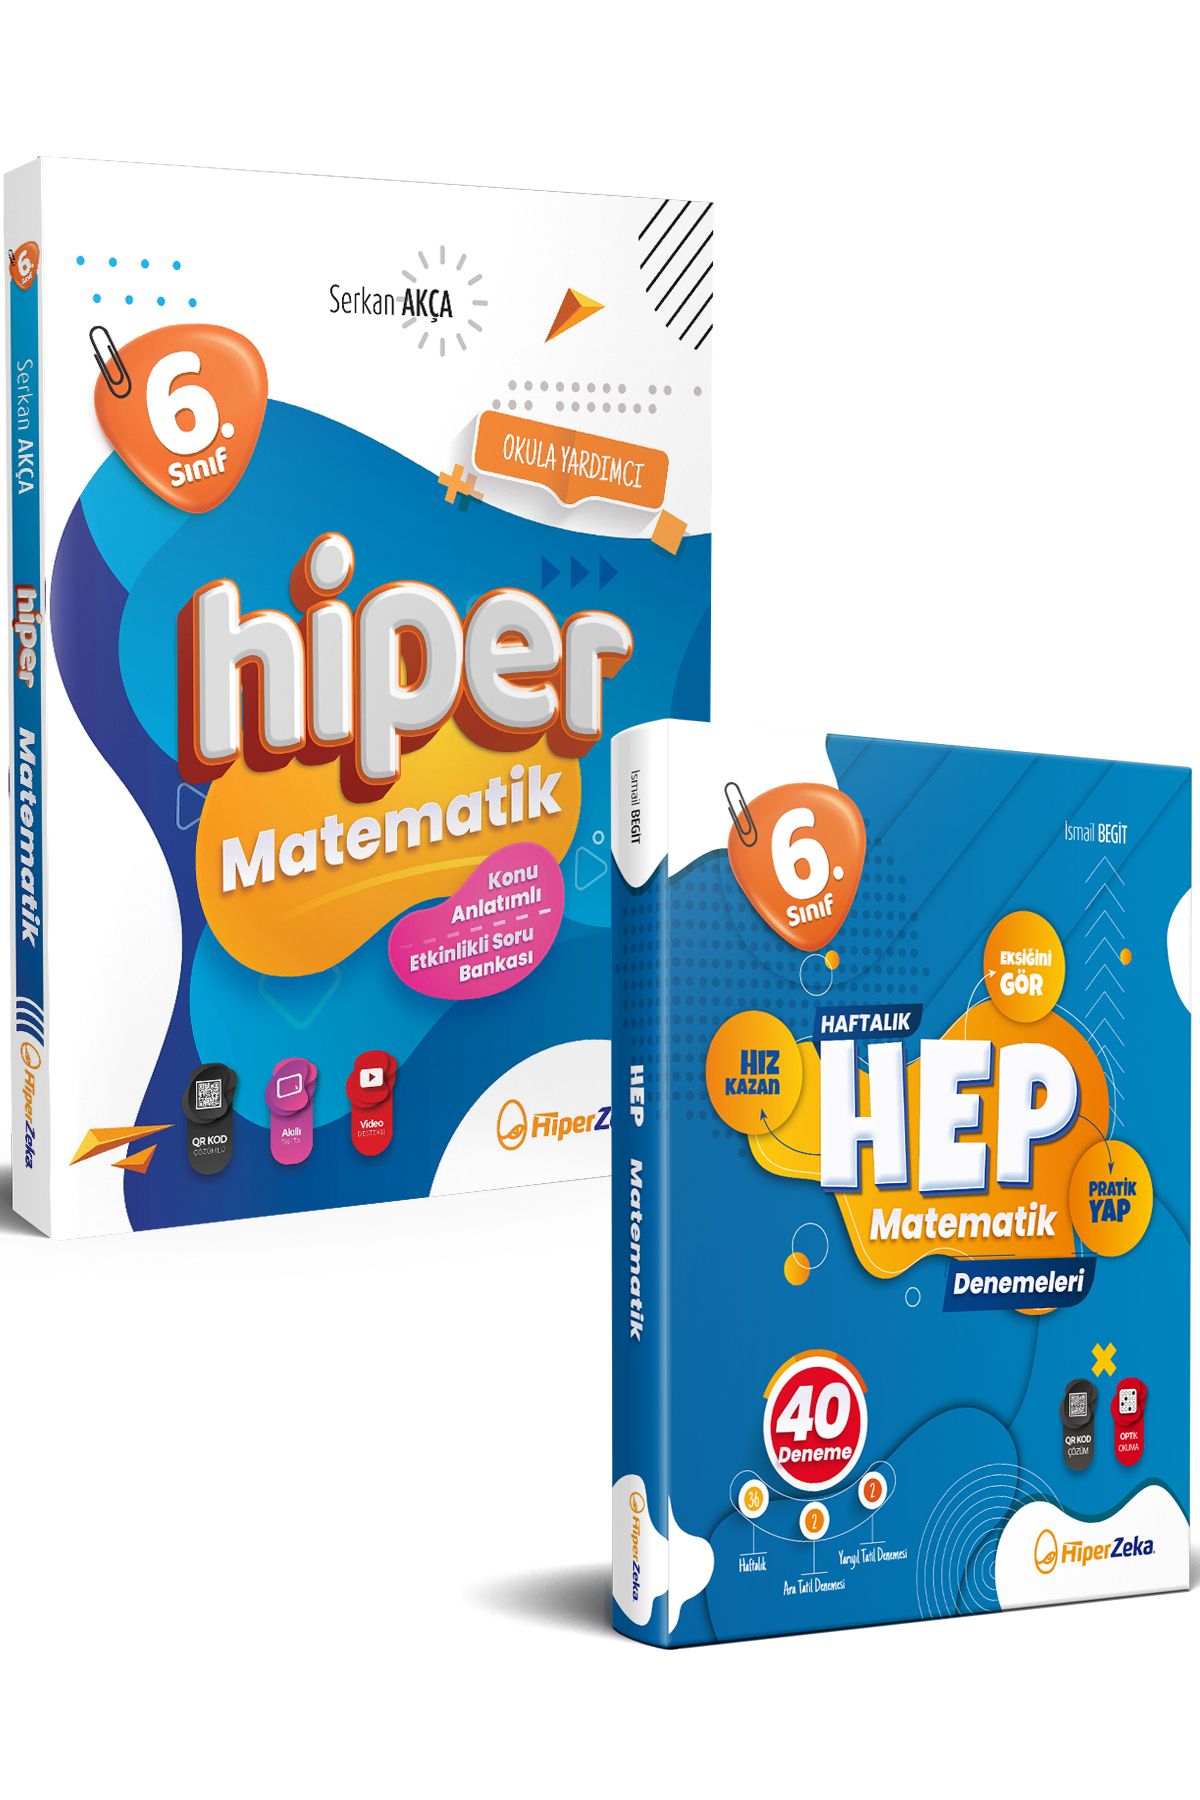 Hiper 6.Sınıf Hiper Matematik Konu Anlatımlı & Etkinlikli Soru Bankası ve Haftalık Hep Matematik 40 Deneme